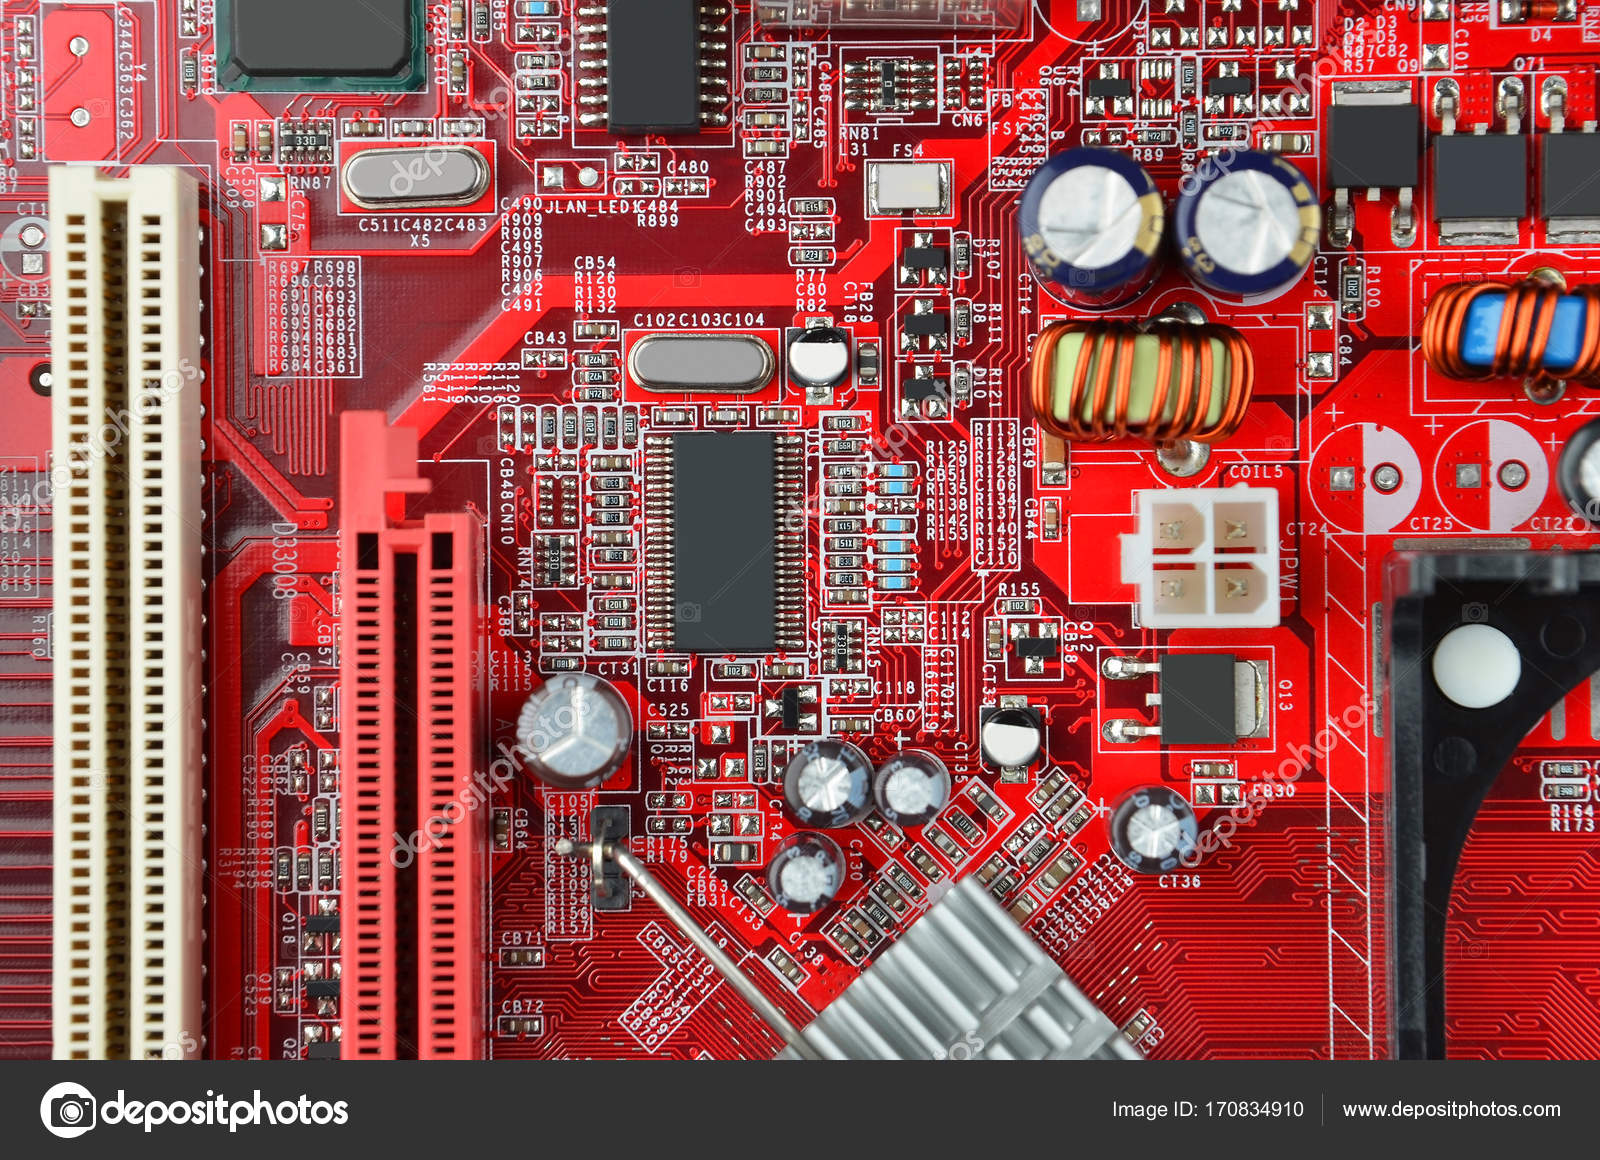 Faret vild belastning Ende Red computer motherboard Stock Photo by ©unkas 170834910